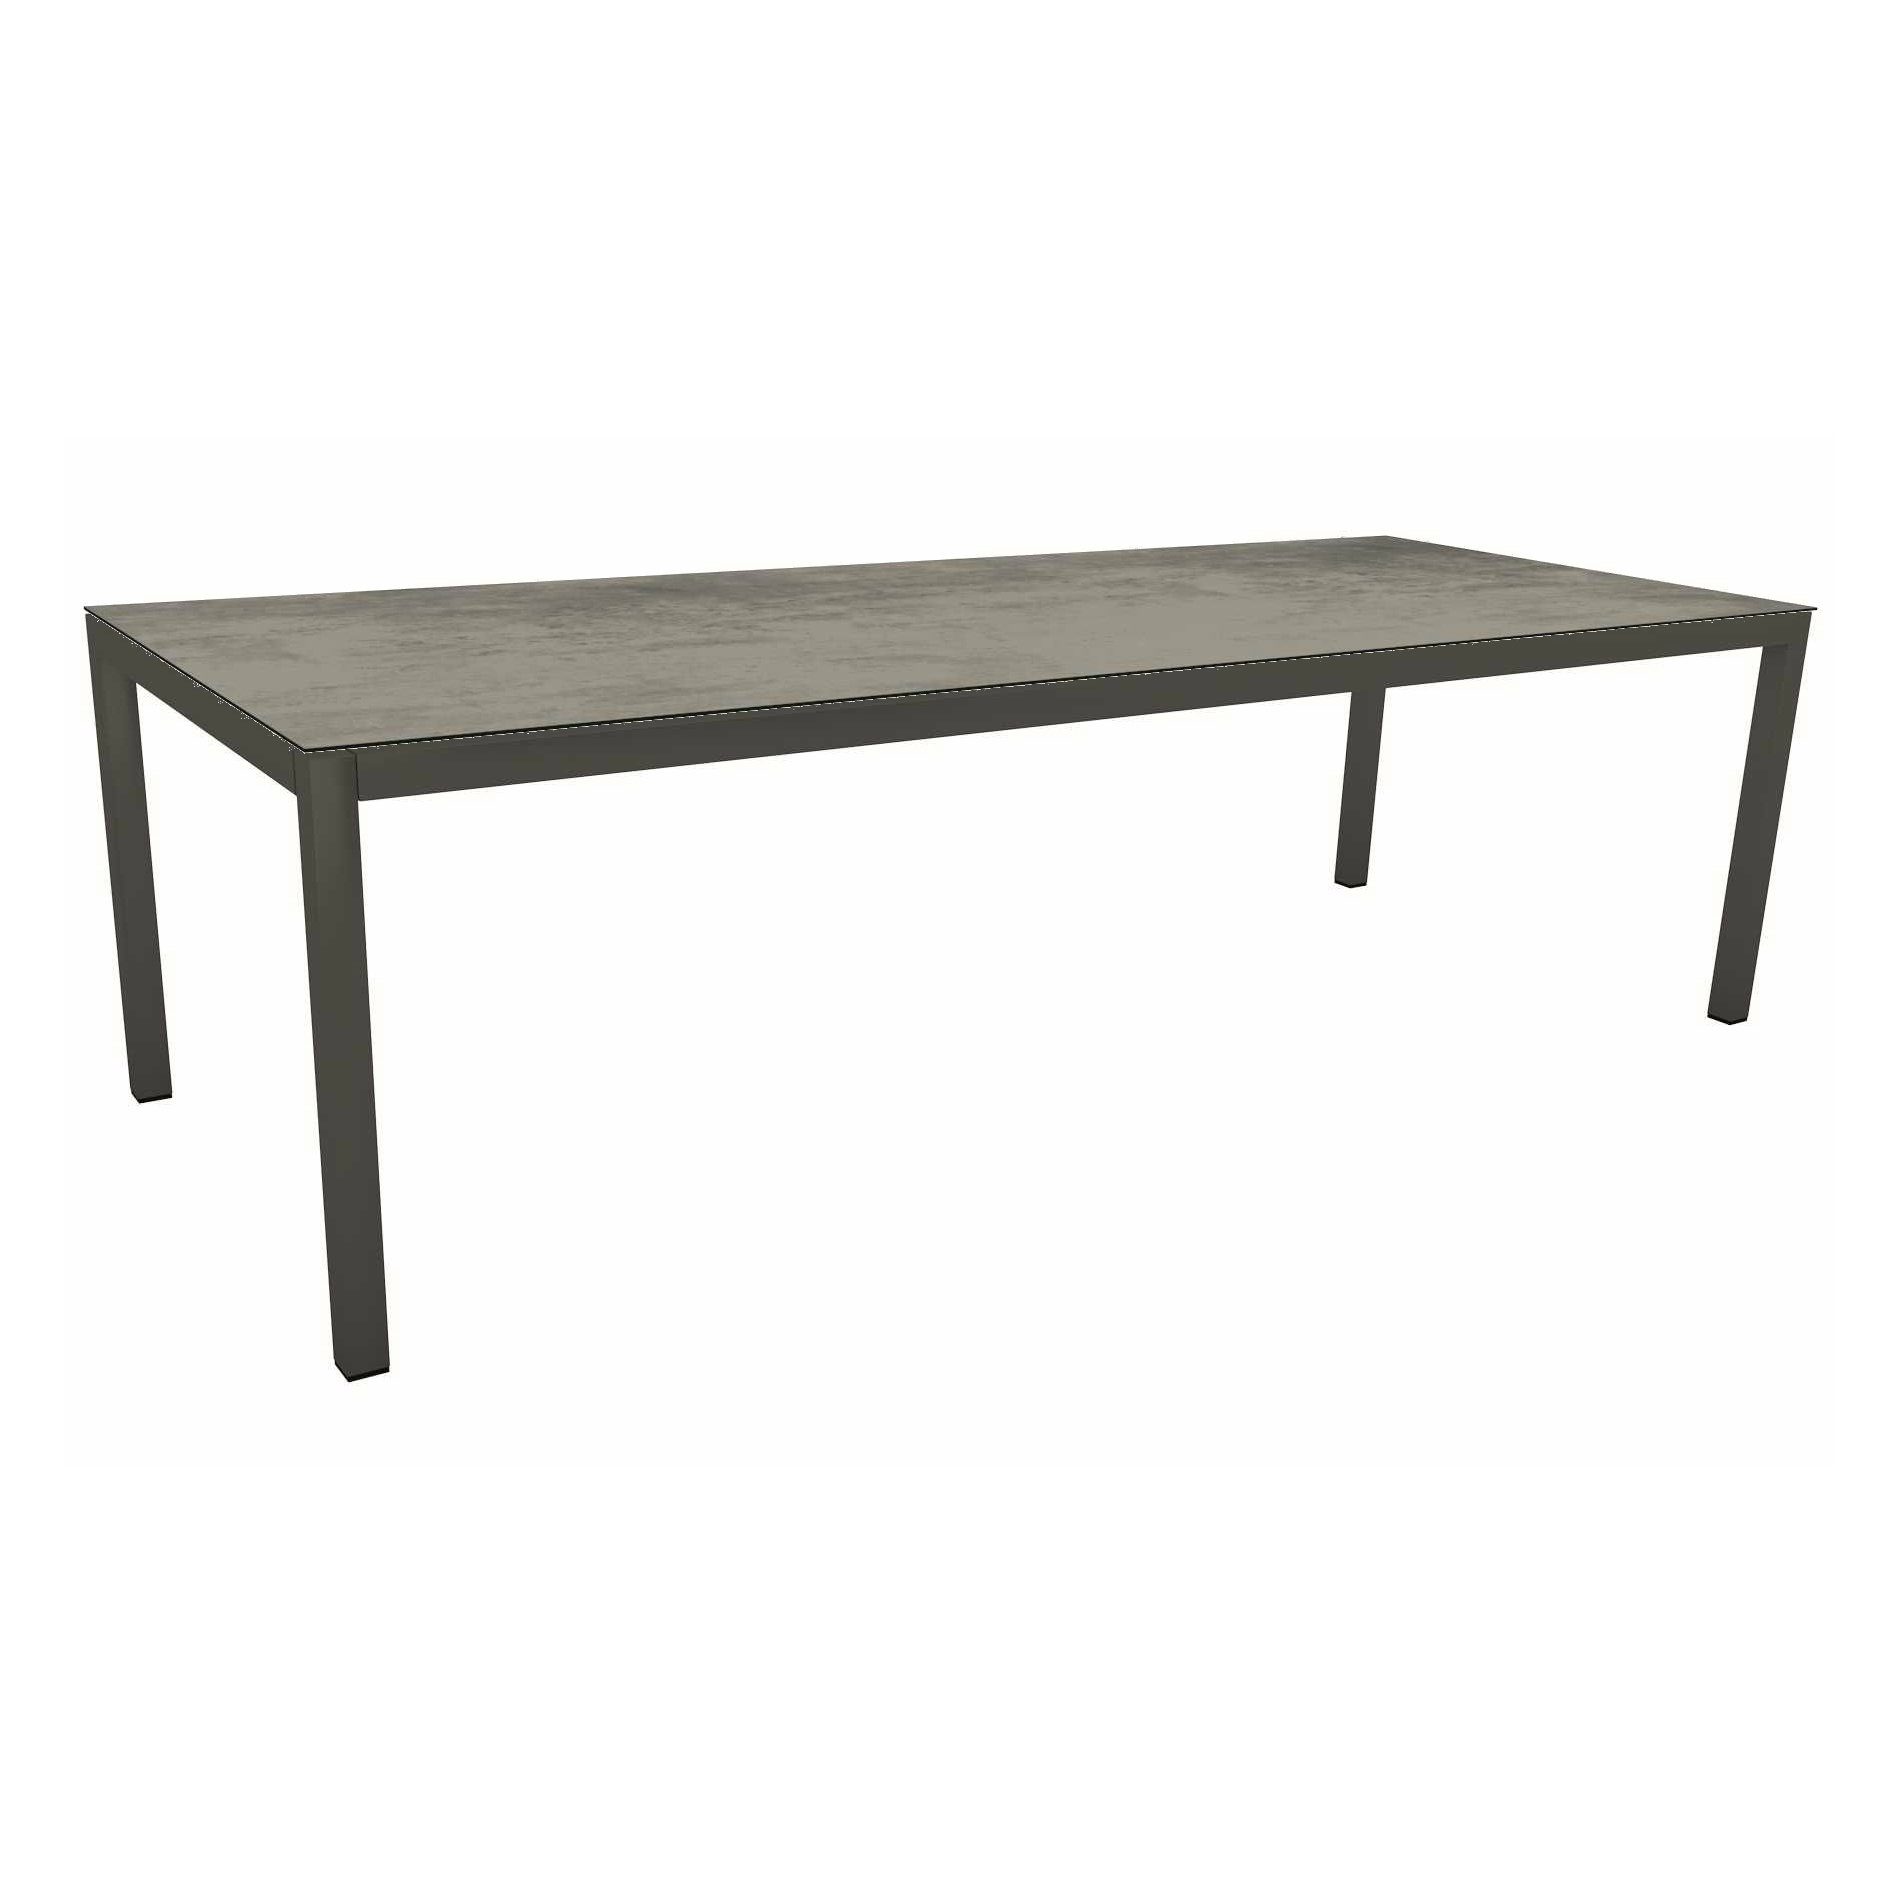 Stern Tischsystem Gartentisch, Gestell Aluminium anthrazit, Tischplatte HPL Zement, Maße: 250x100 cm